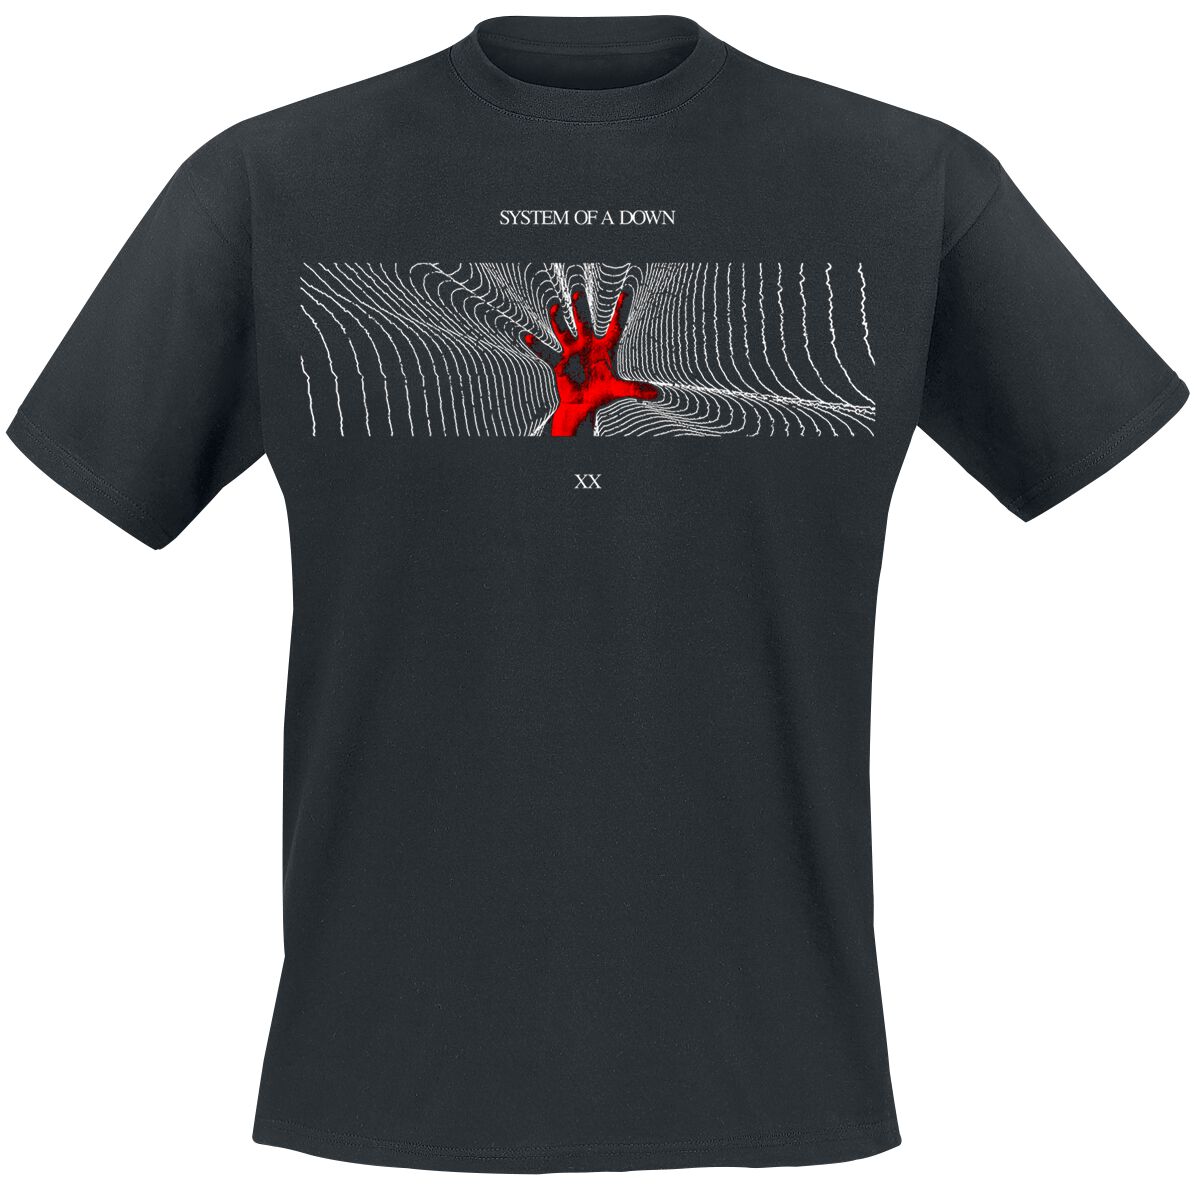 System Of A Down T-Shirt - Radiation - S bis XXL - für Männer - Größe XL - schwarz  - Lizenziertes Merchandise!